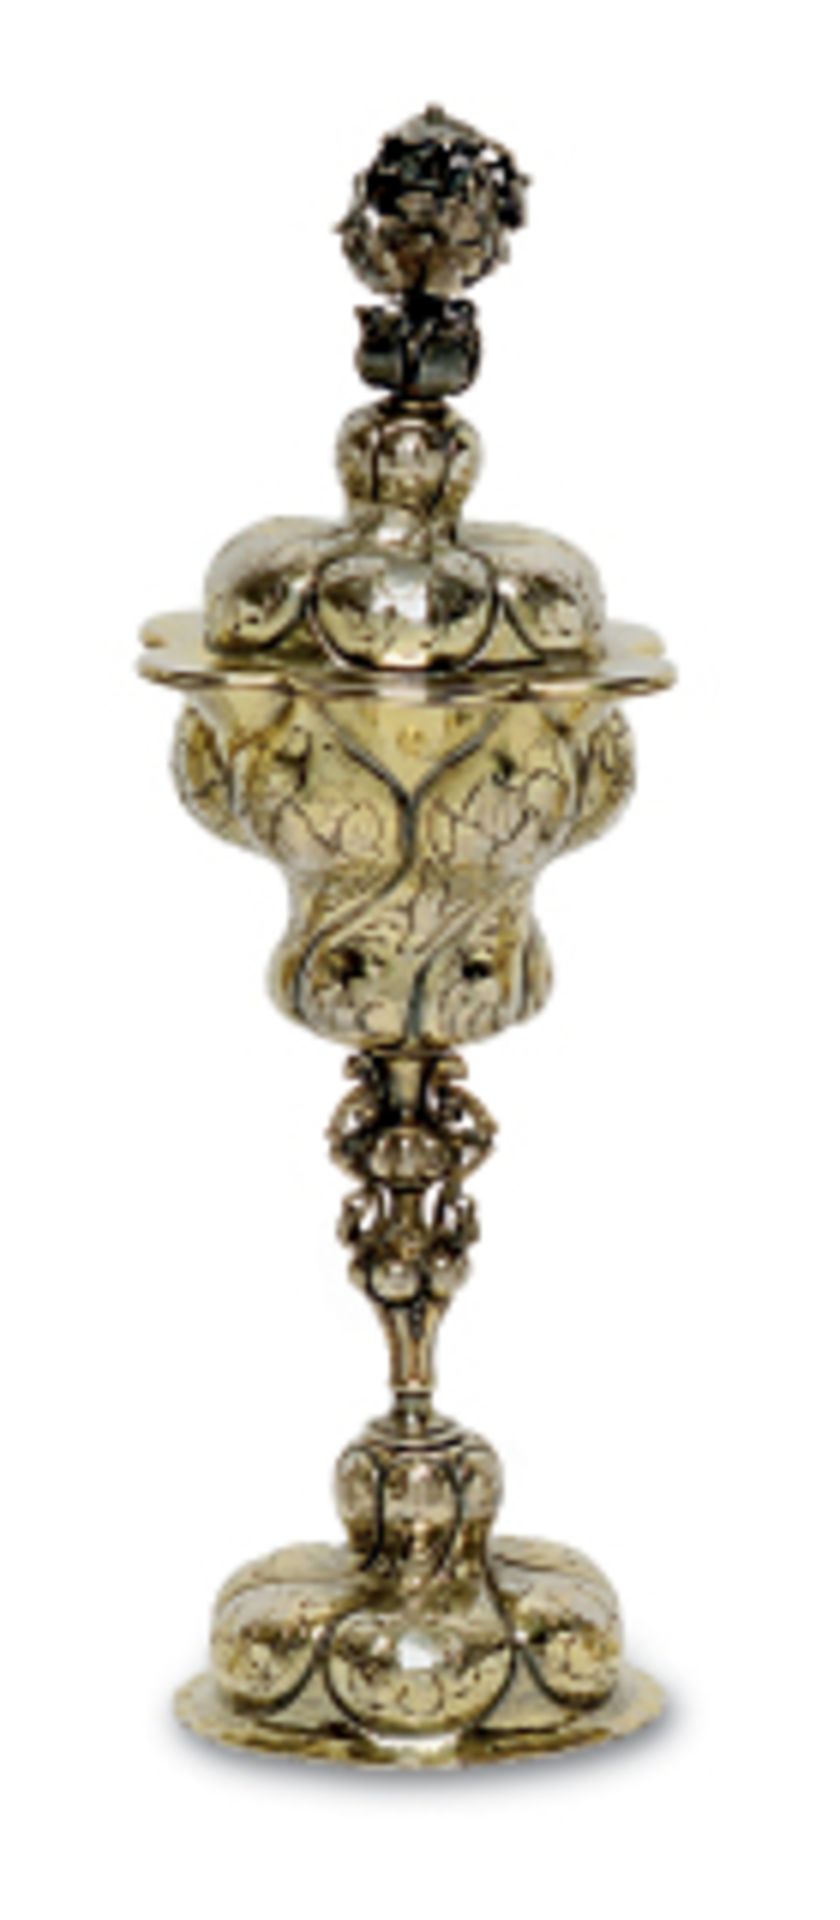 Kleiner Akelei-DeckelpokalIm Stil des 17. Jhs. Silber, teilvergoldet. Sechsfach gebuckelte,